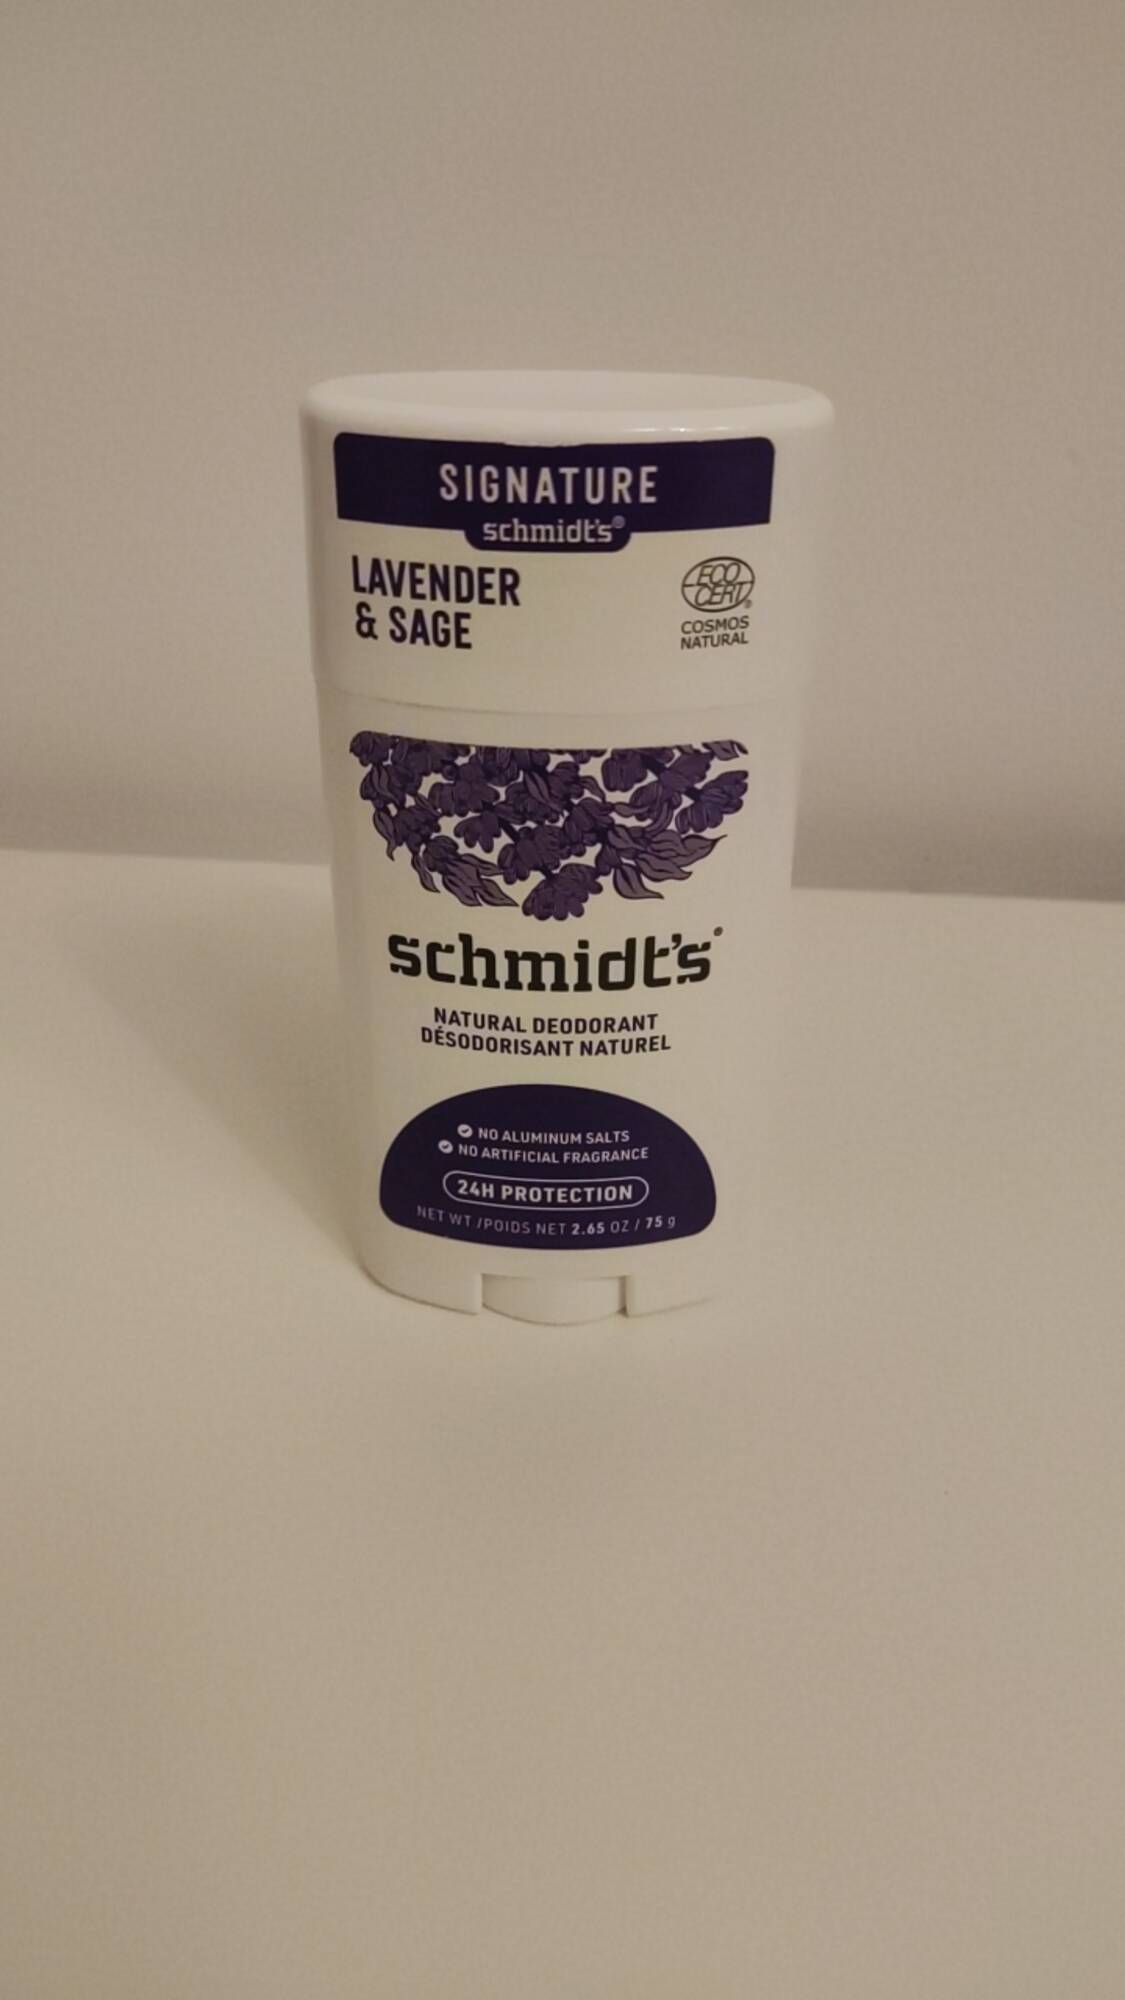 SCHMIDT'S - Lavender & sage - Natural deodorant  24h